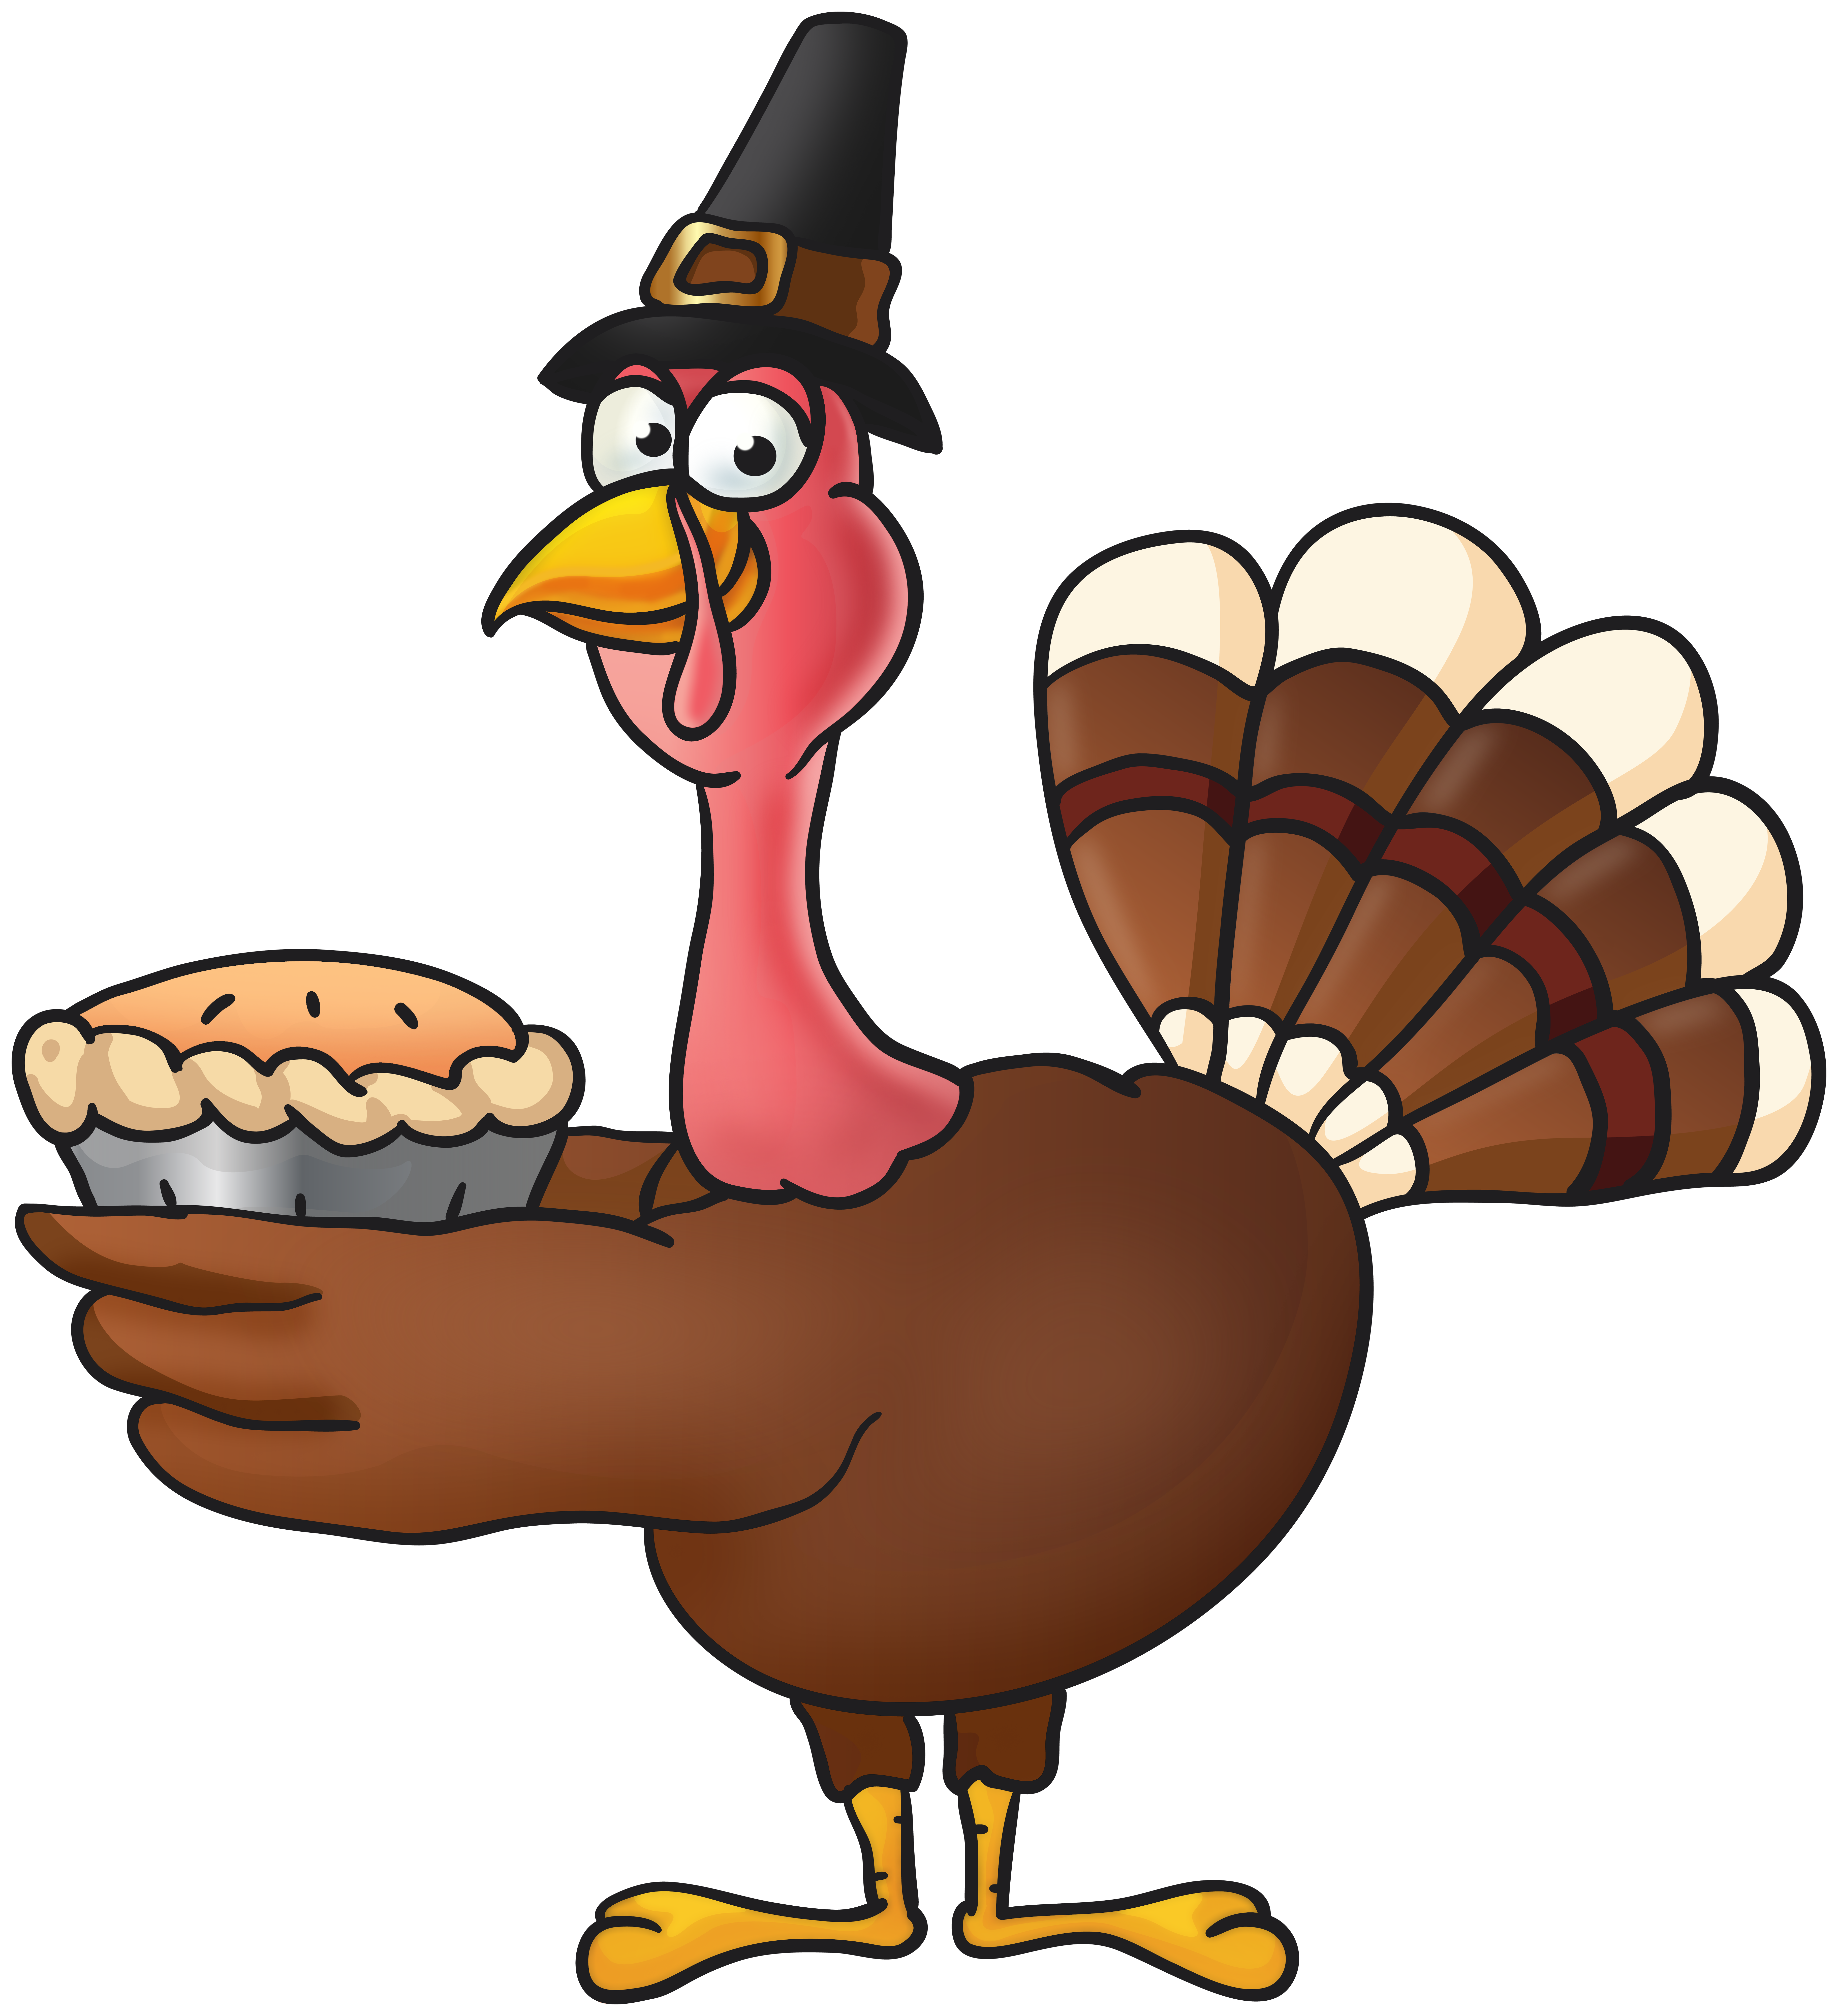 cute thanksgiving turkey clipart